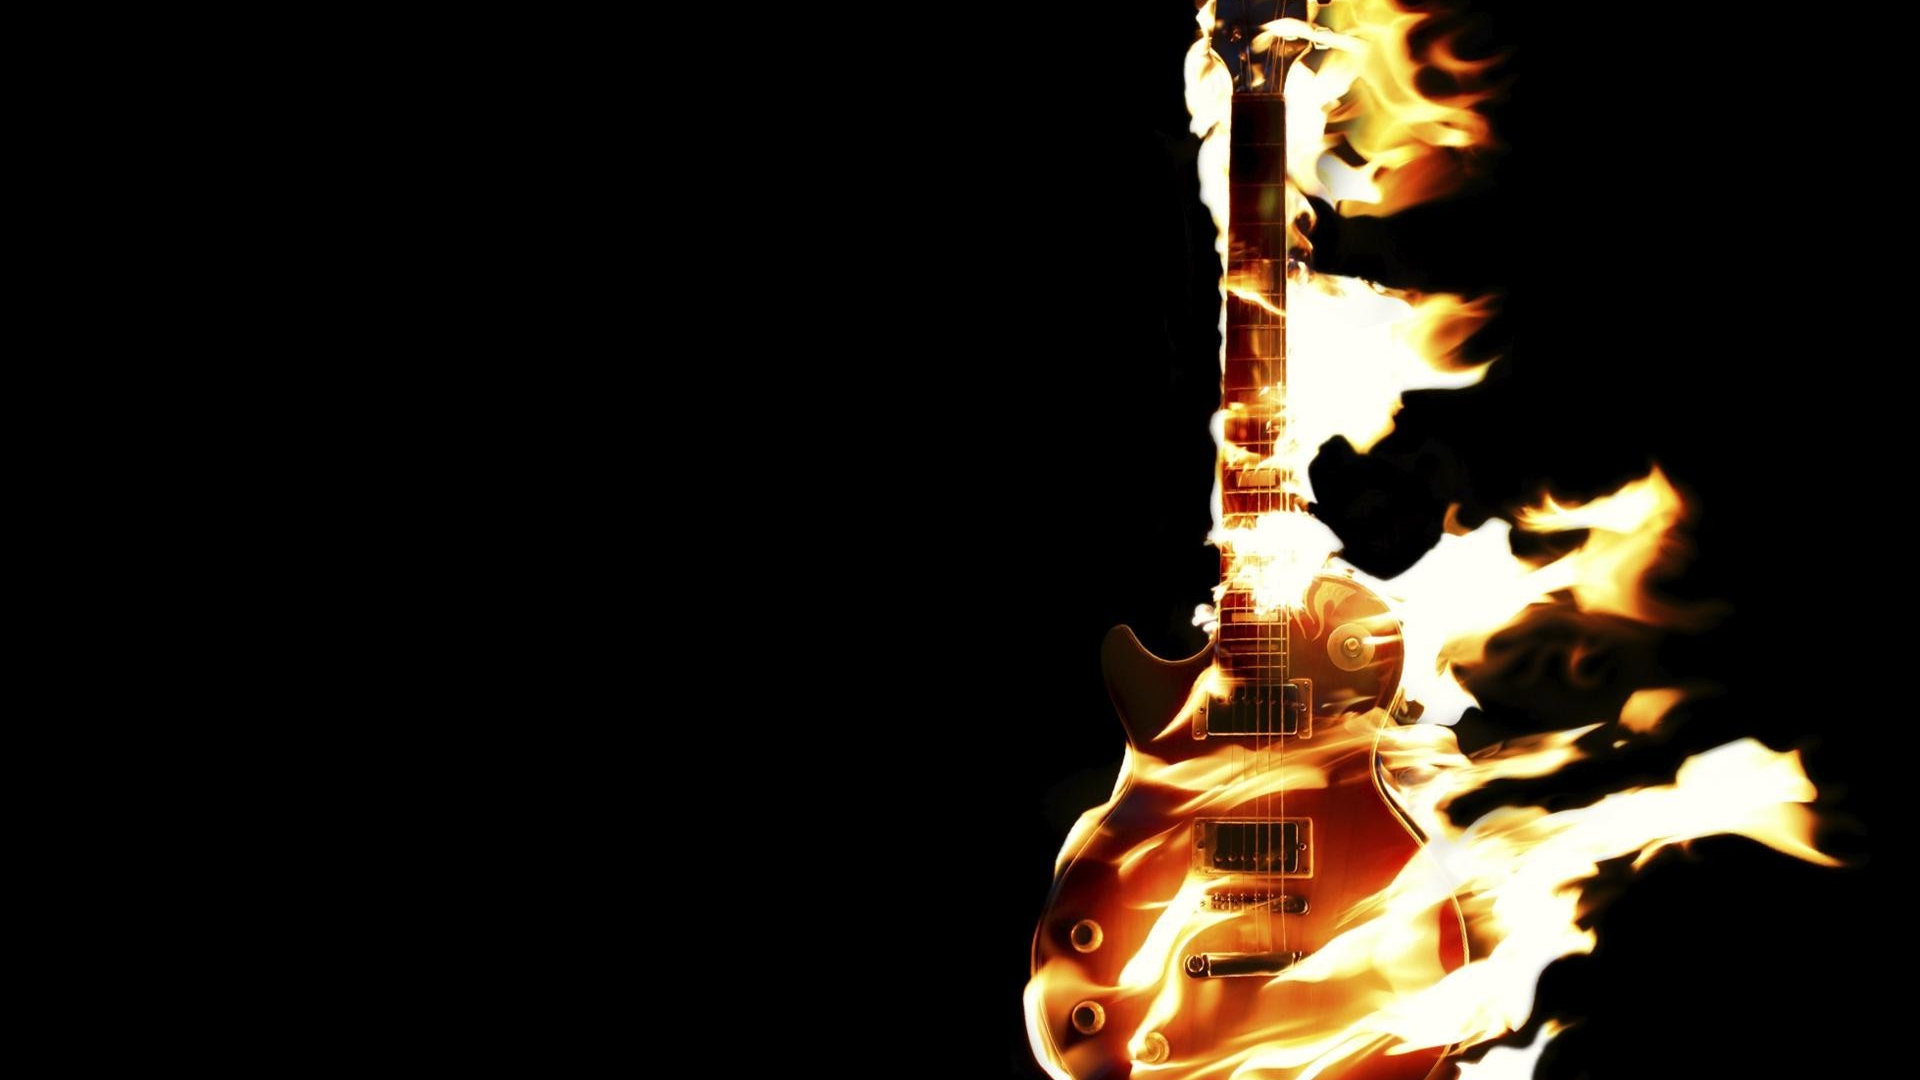 Free download Flaming Guitar Desktop Background [1920x1200] for your Desktop, Mobile & Tablet. Explore Abstract Guitar Wallpaper. Abstract Guitar Wallpaper, Guitar Wallpaper, Bass Guitar Wallpaper